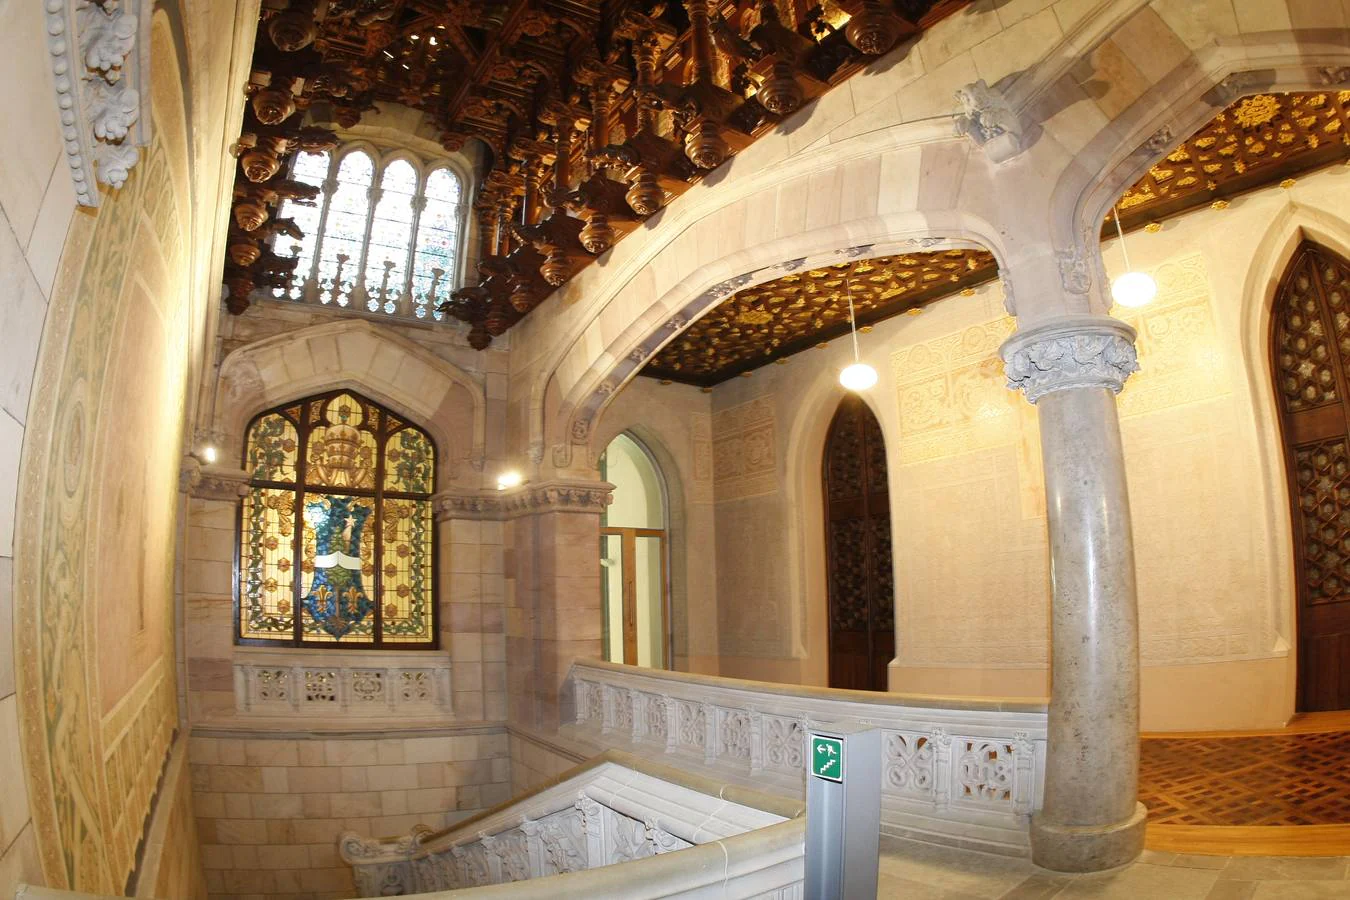 La estructura y la cubierta de la iglesia del Seminario Mayor han sido rehabilitadas, pero aún queda pendiente otra fase para restaurar varios elementos arquitectónicos y artísticos.